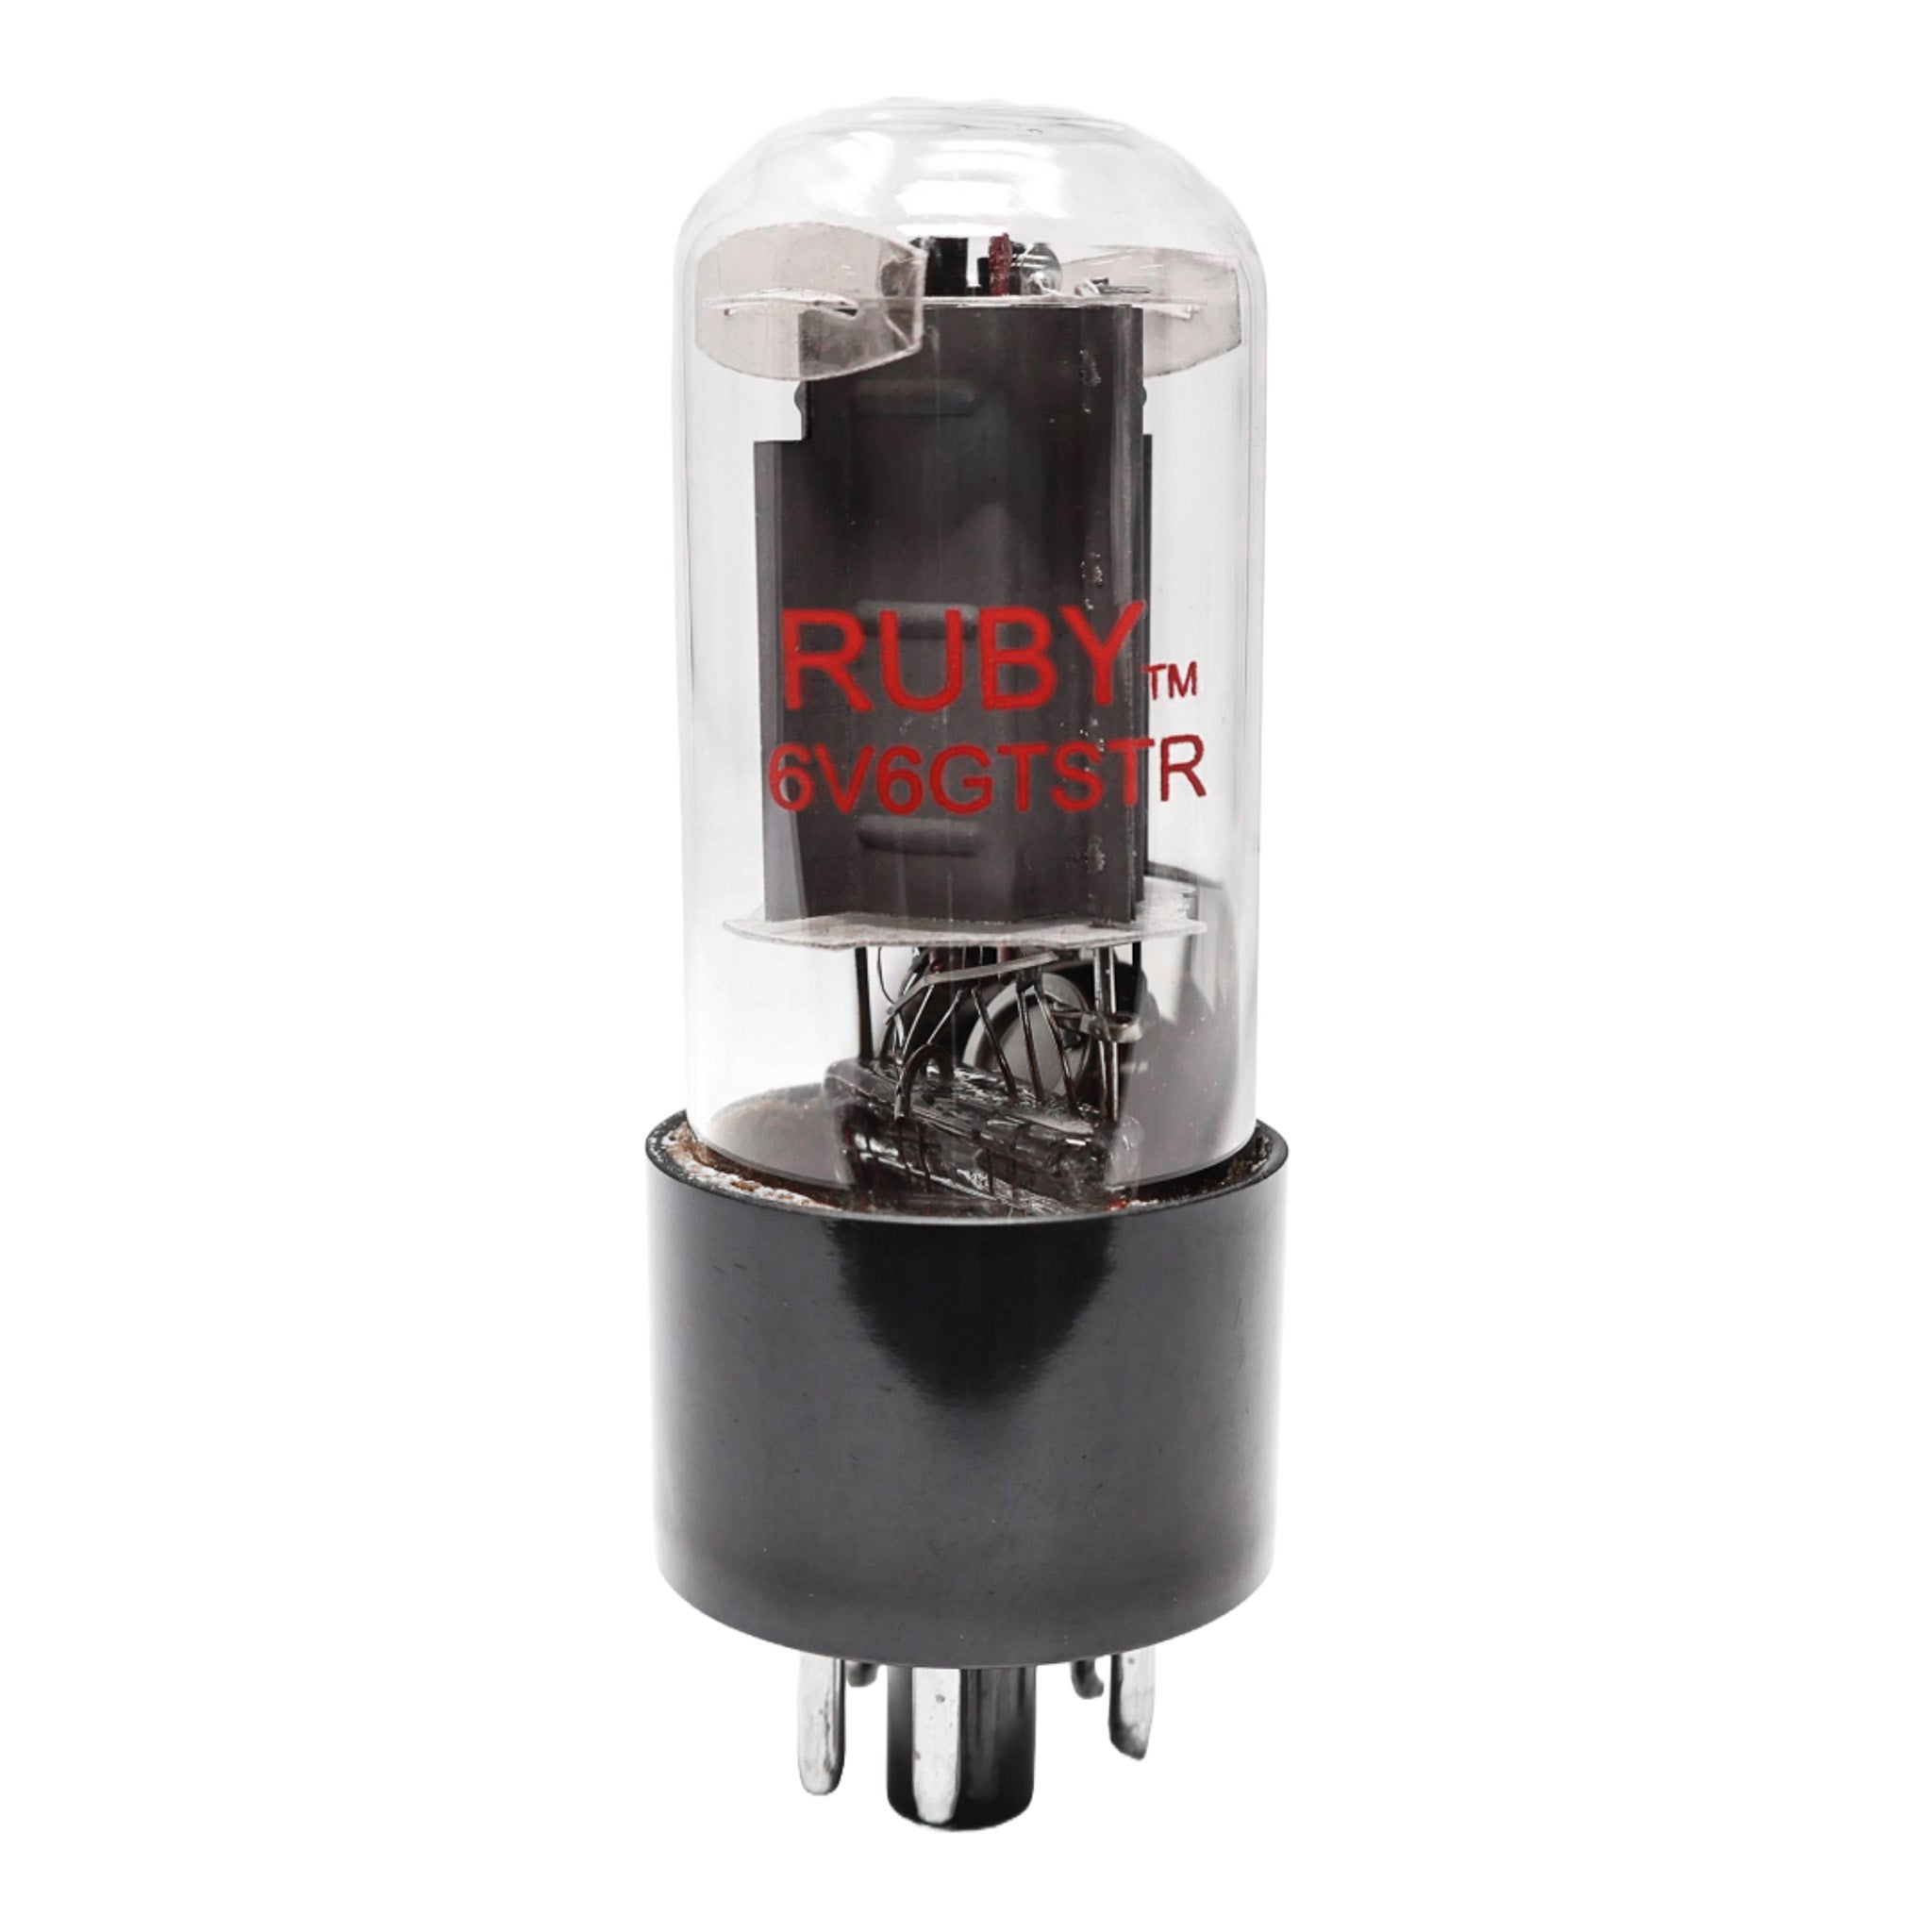 RUBY 6V6GTSTR Power Vacuum Tube